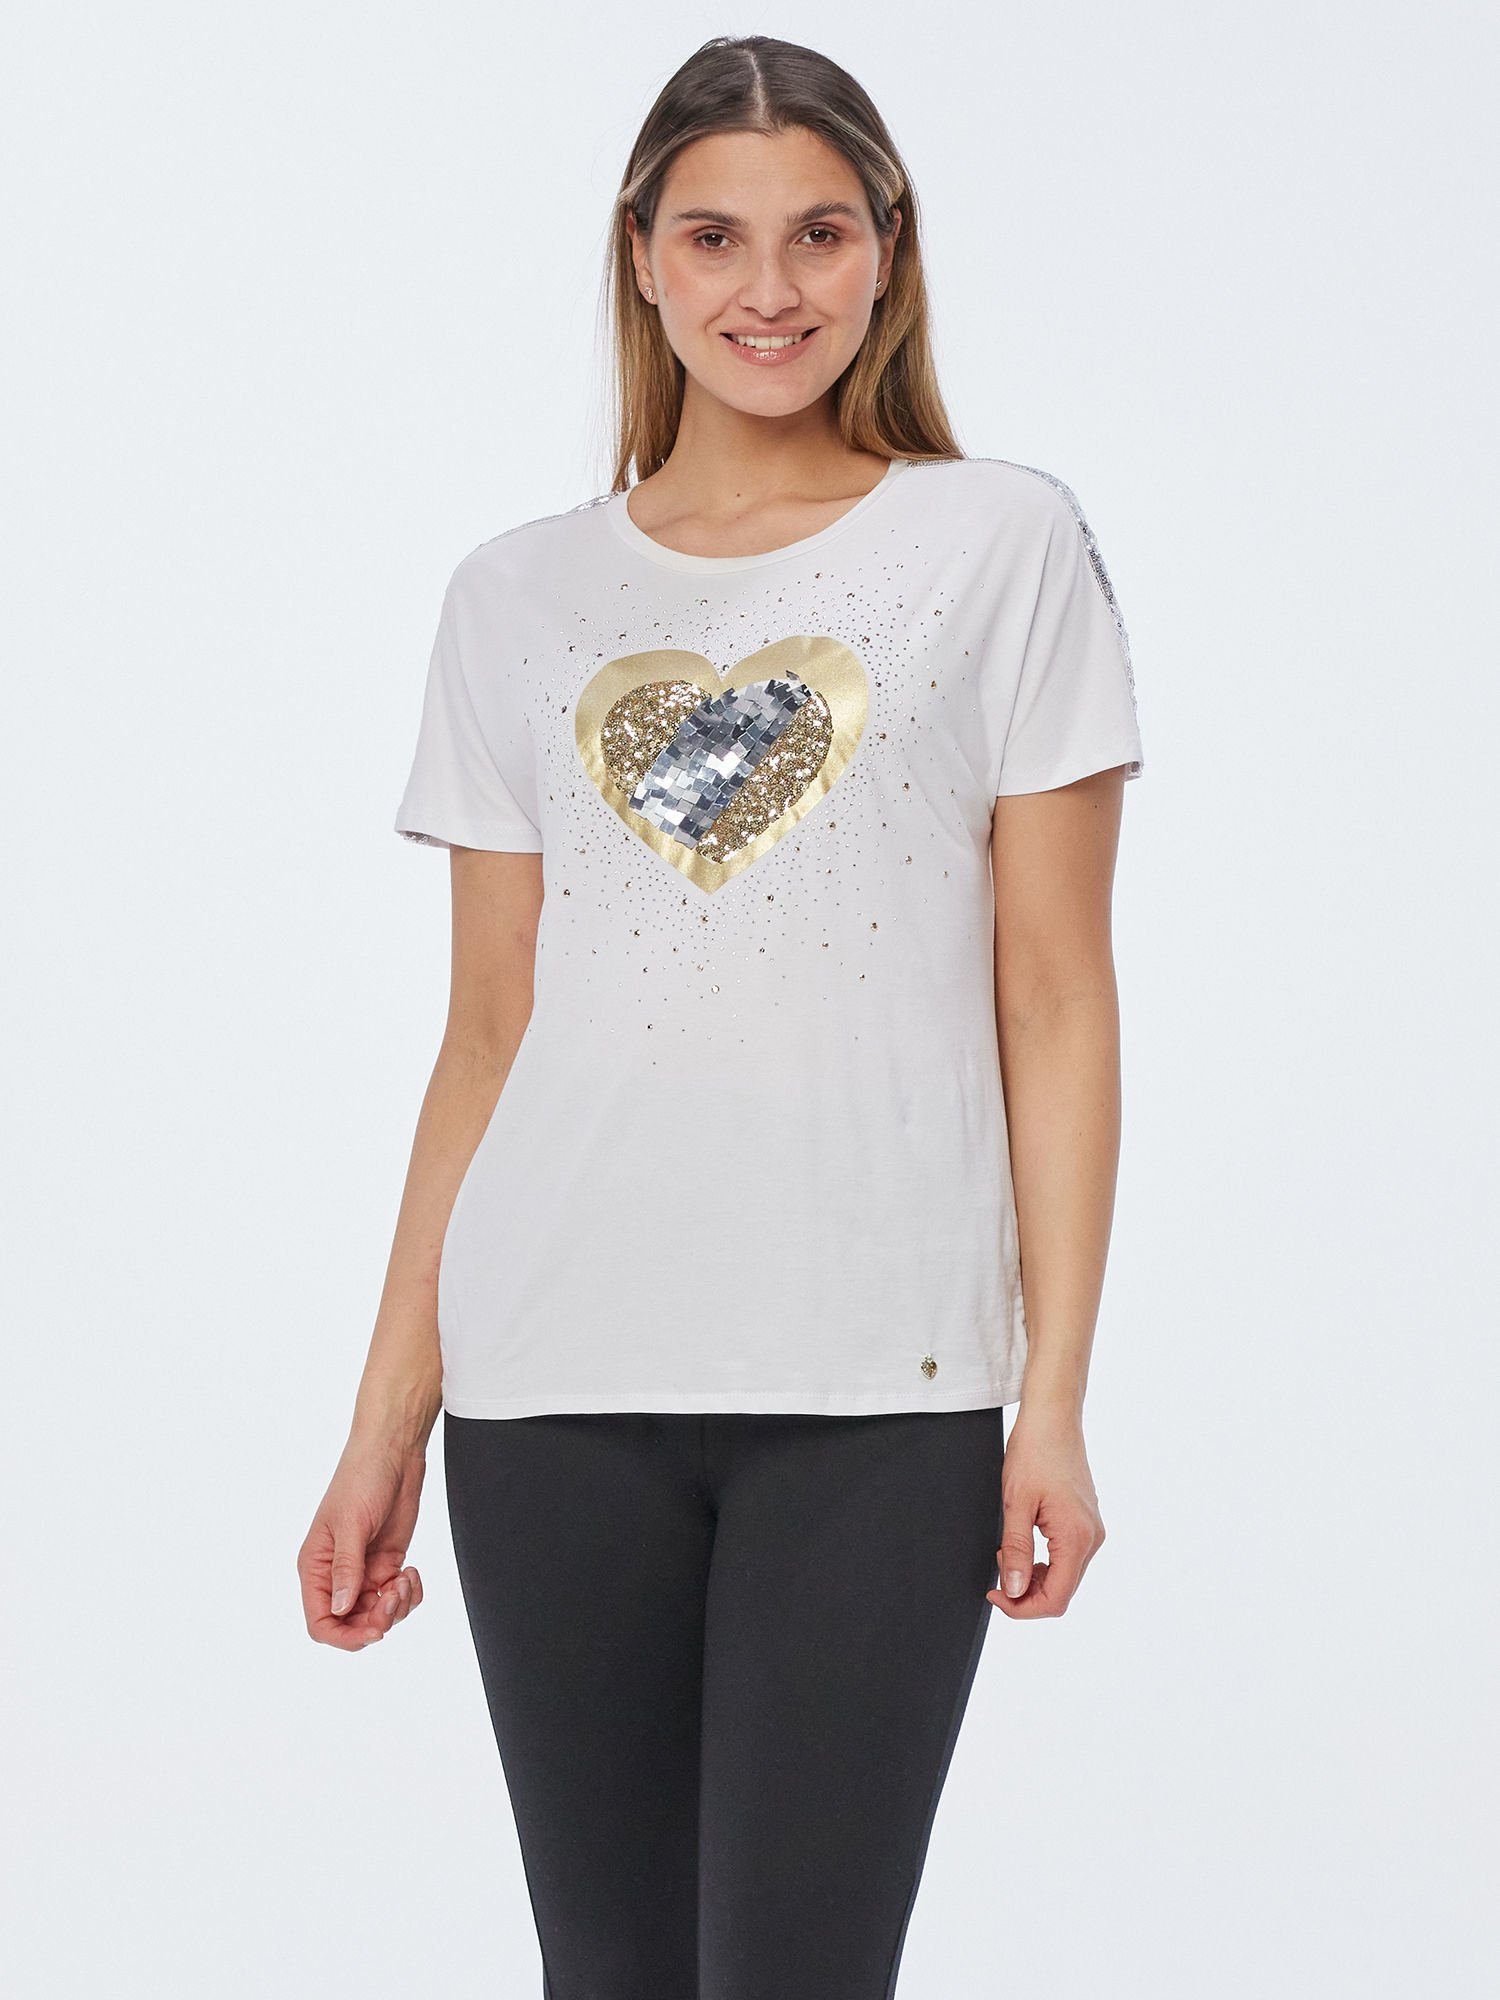 Christian Materne T-Shirt Shirt With Love mit aufwendiger Glitzer- und  Strassapplikation